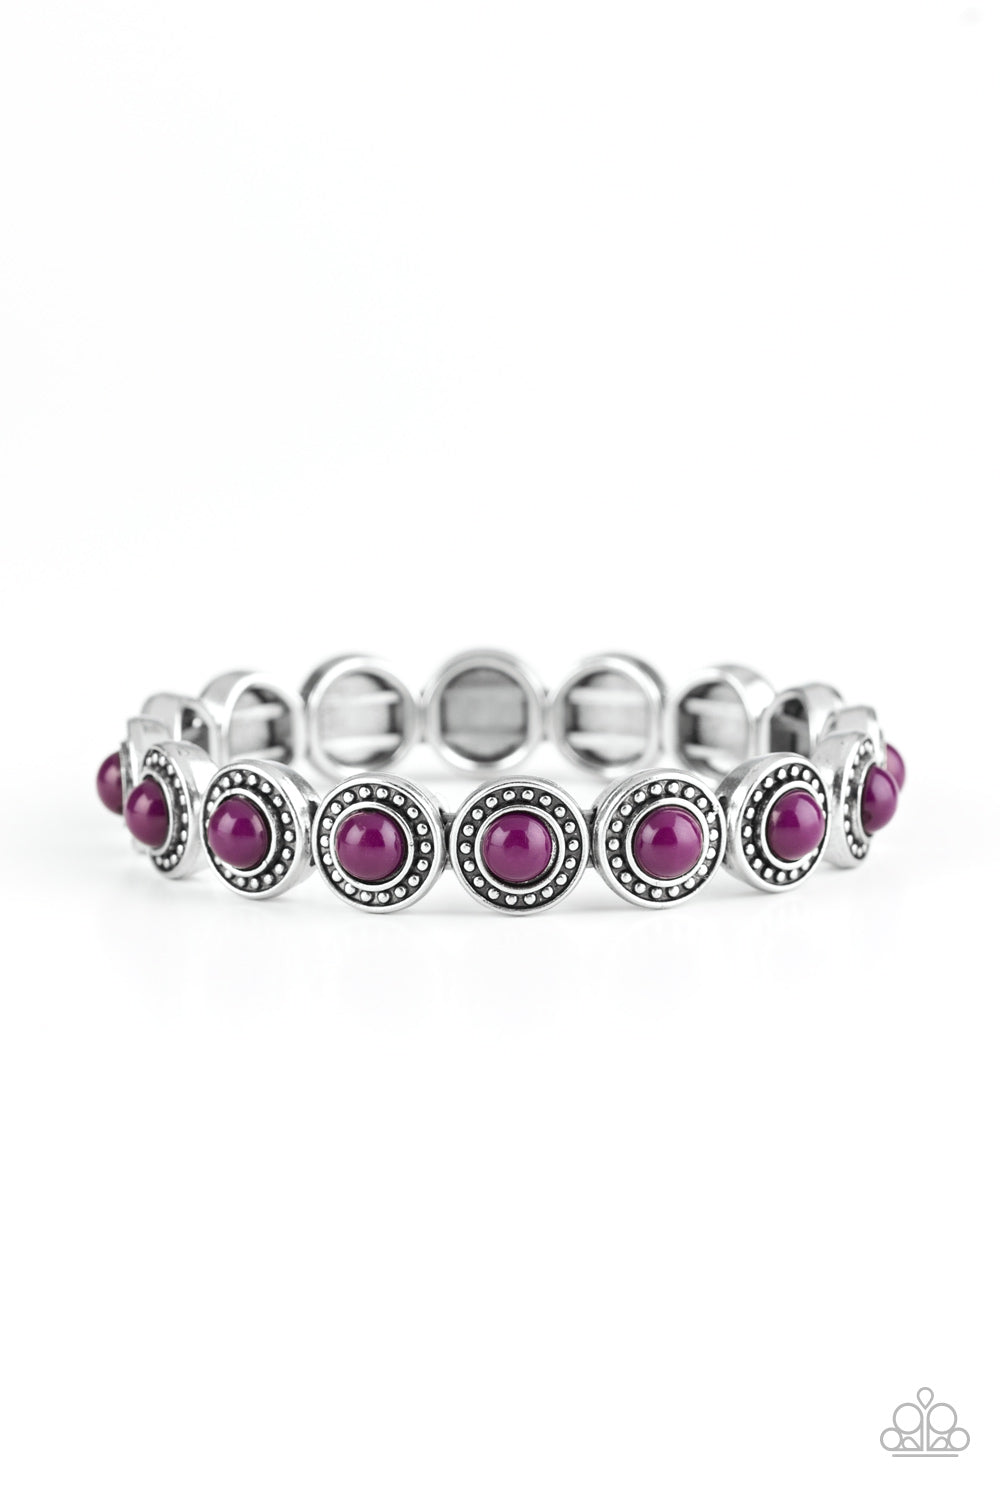 Paparazzi Accessories - Globetrotter Goals #N276 Peg - Purple Bracelet